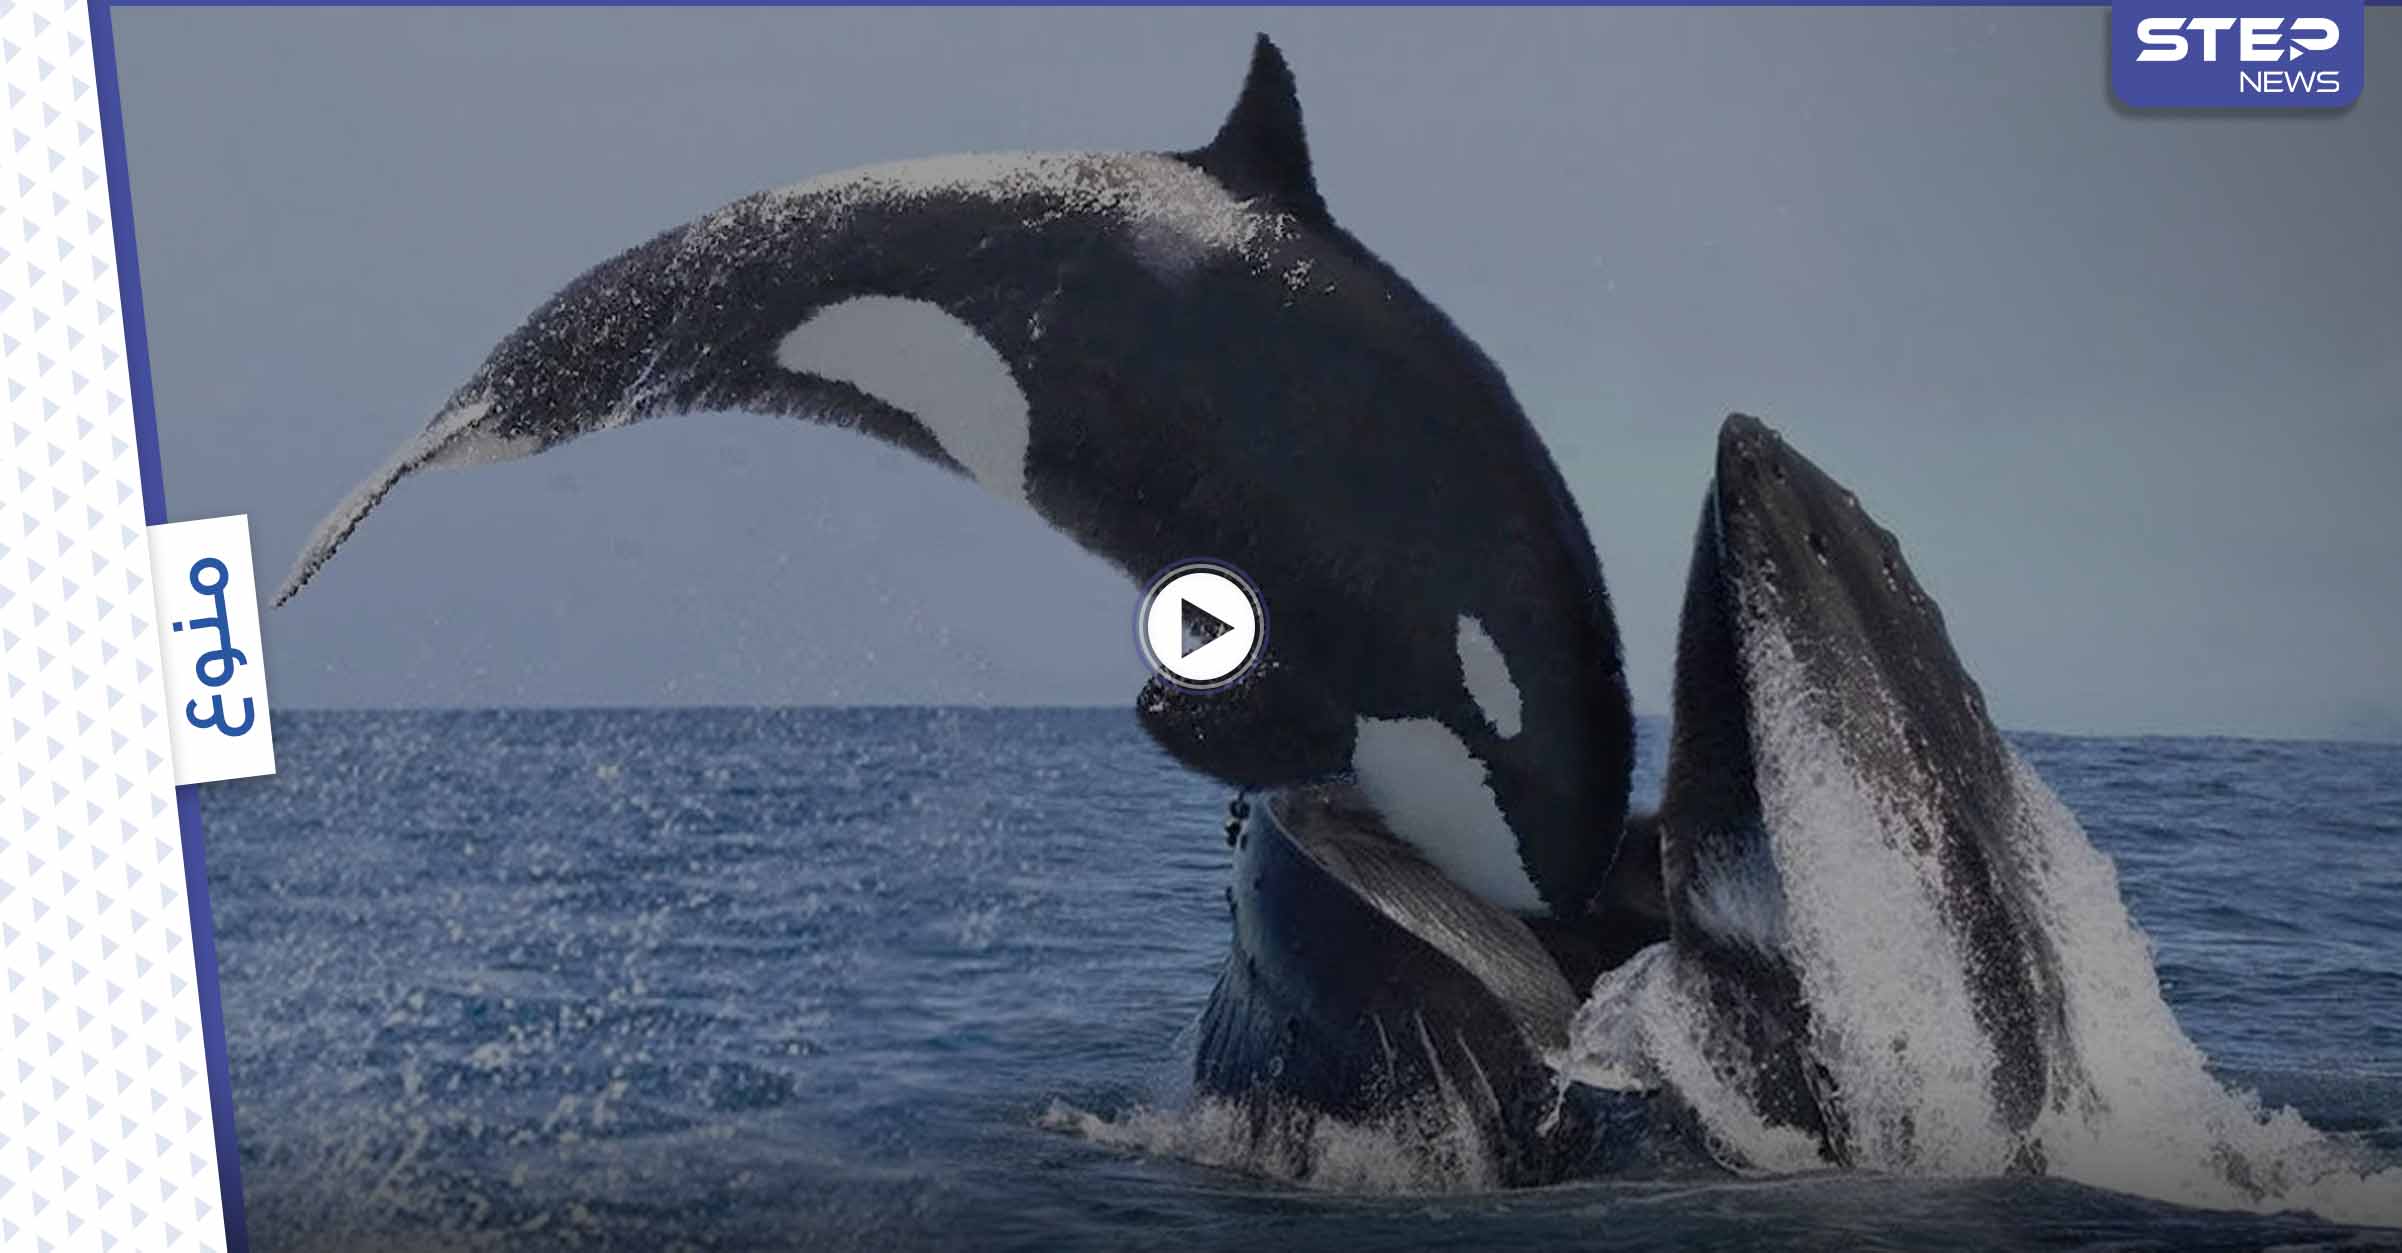 بالفيديو|| نشطاء يوثقون بكاء واستنجاد مؤلم لــ "سفاح المحيط" حوت أوركا القاتل بعد انجرافه على الساحل